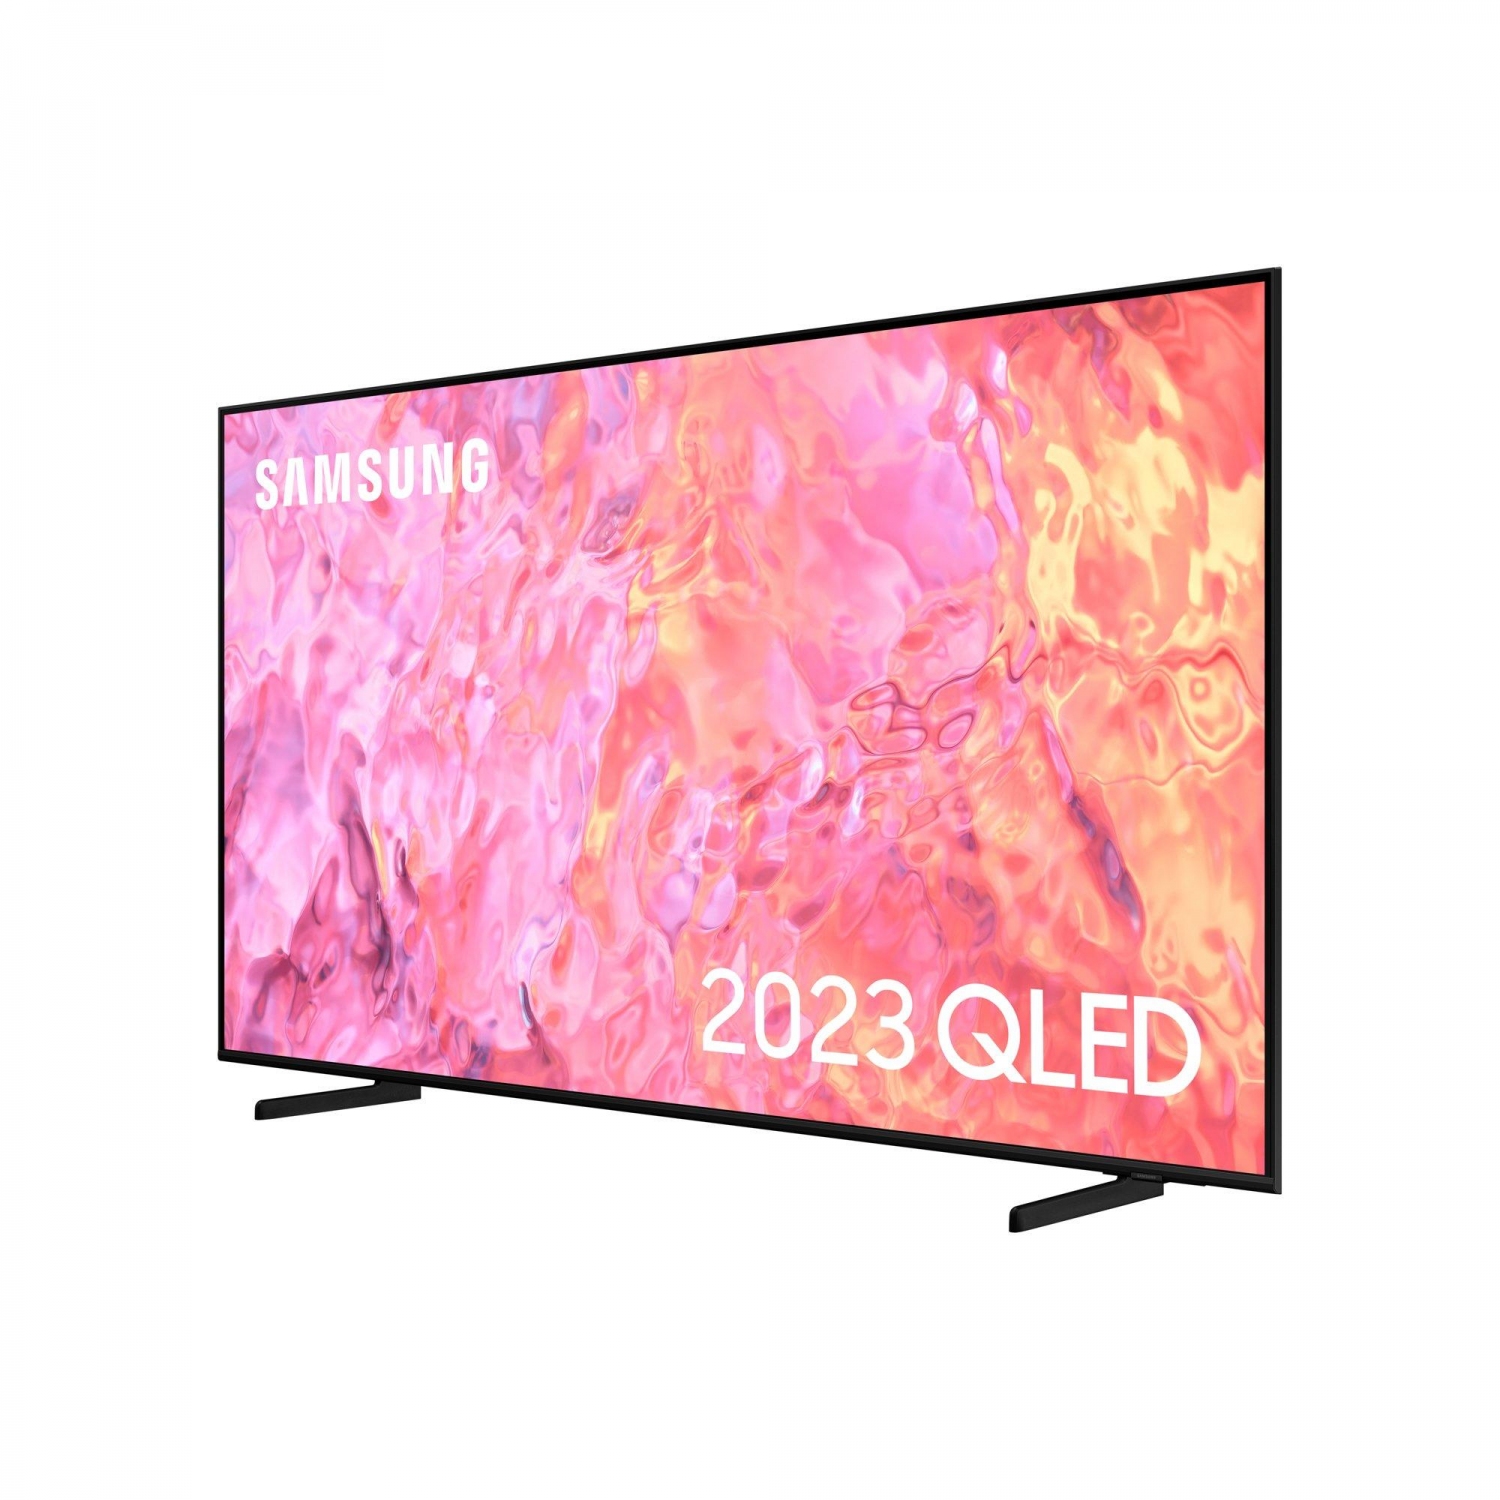 Samsung QE43Q60CAUXXU QLED 4K HD TV - 2